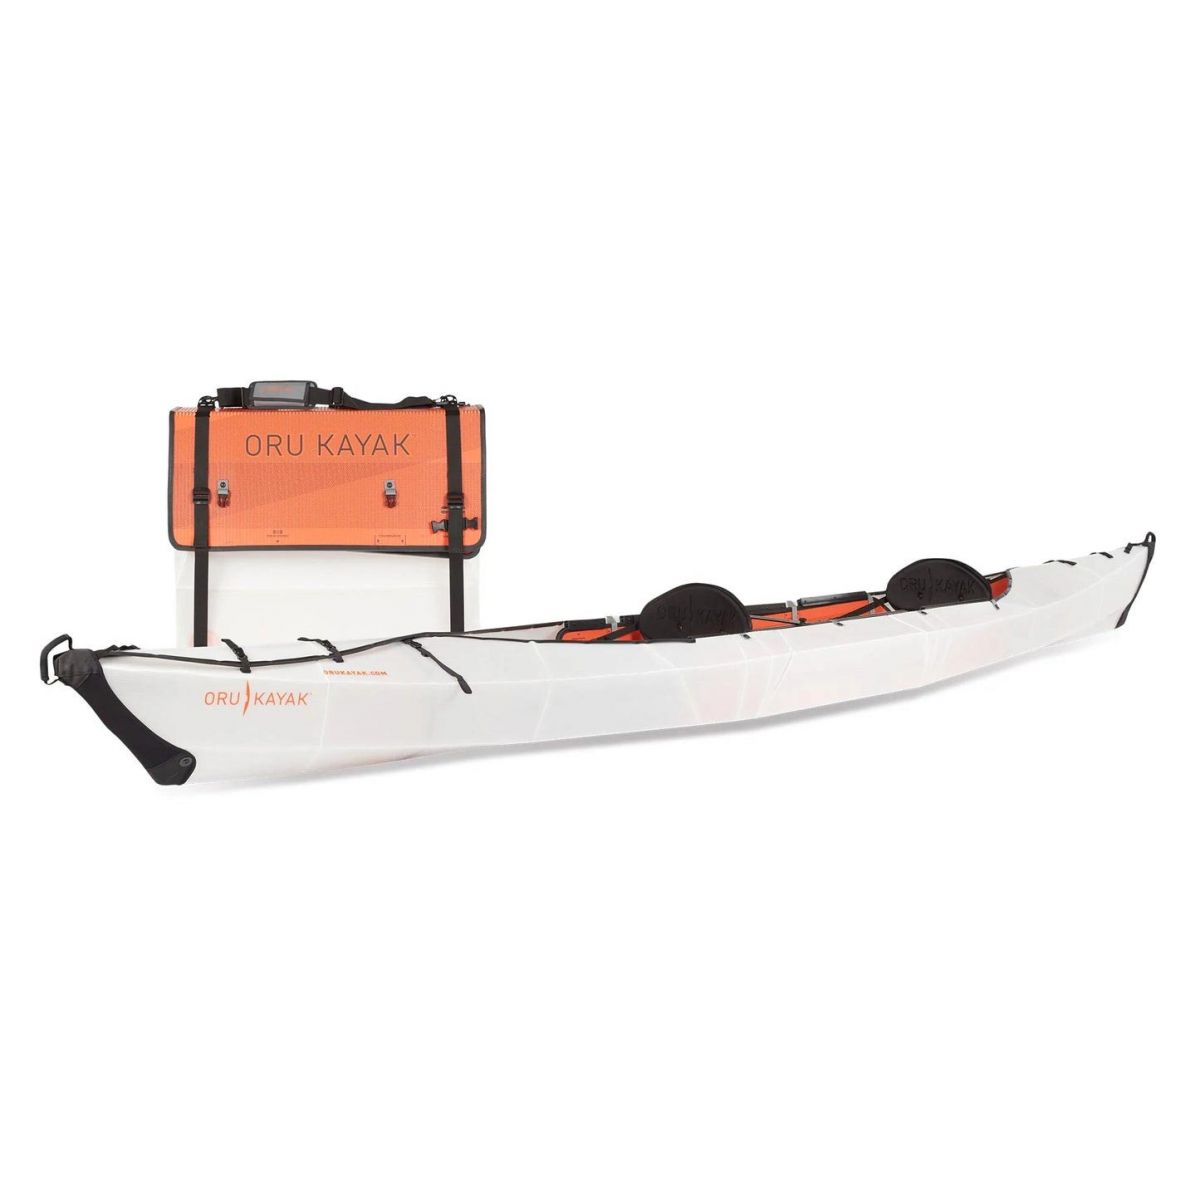 Porte Montre Flottant SURANYI pour Canoe et Kayak Couleur Rose